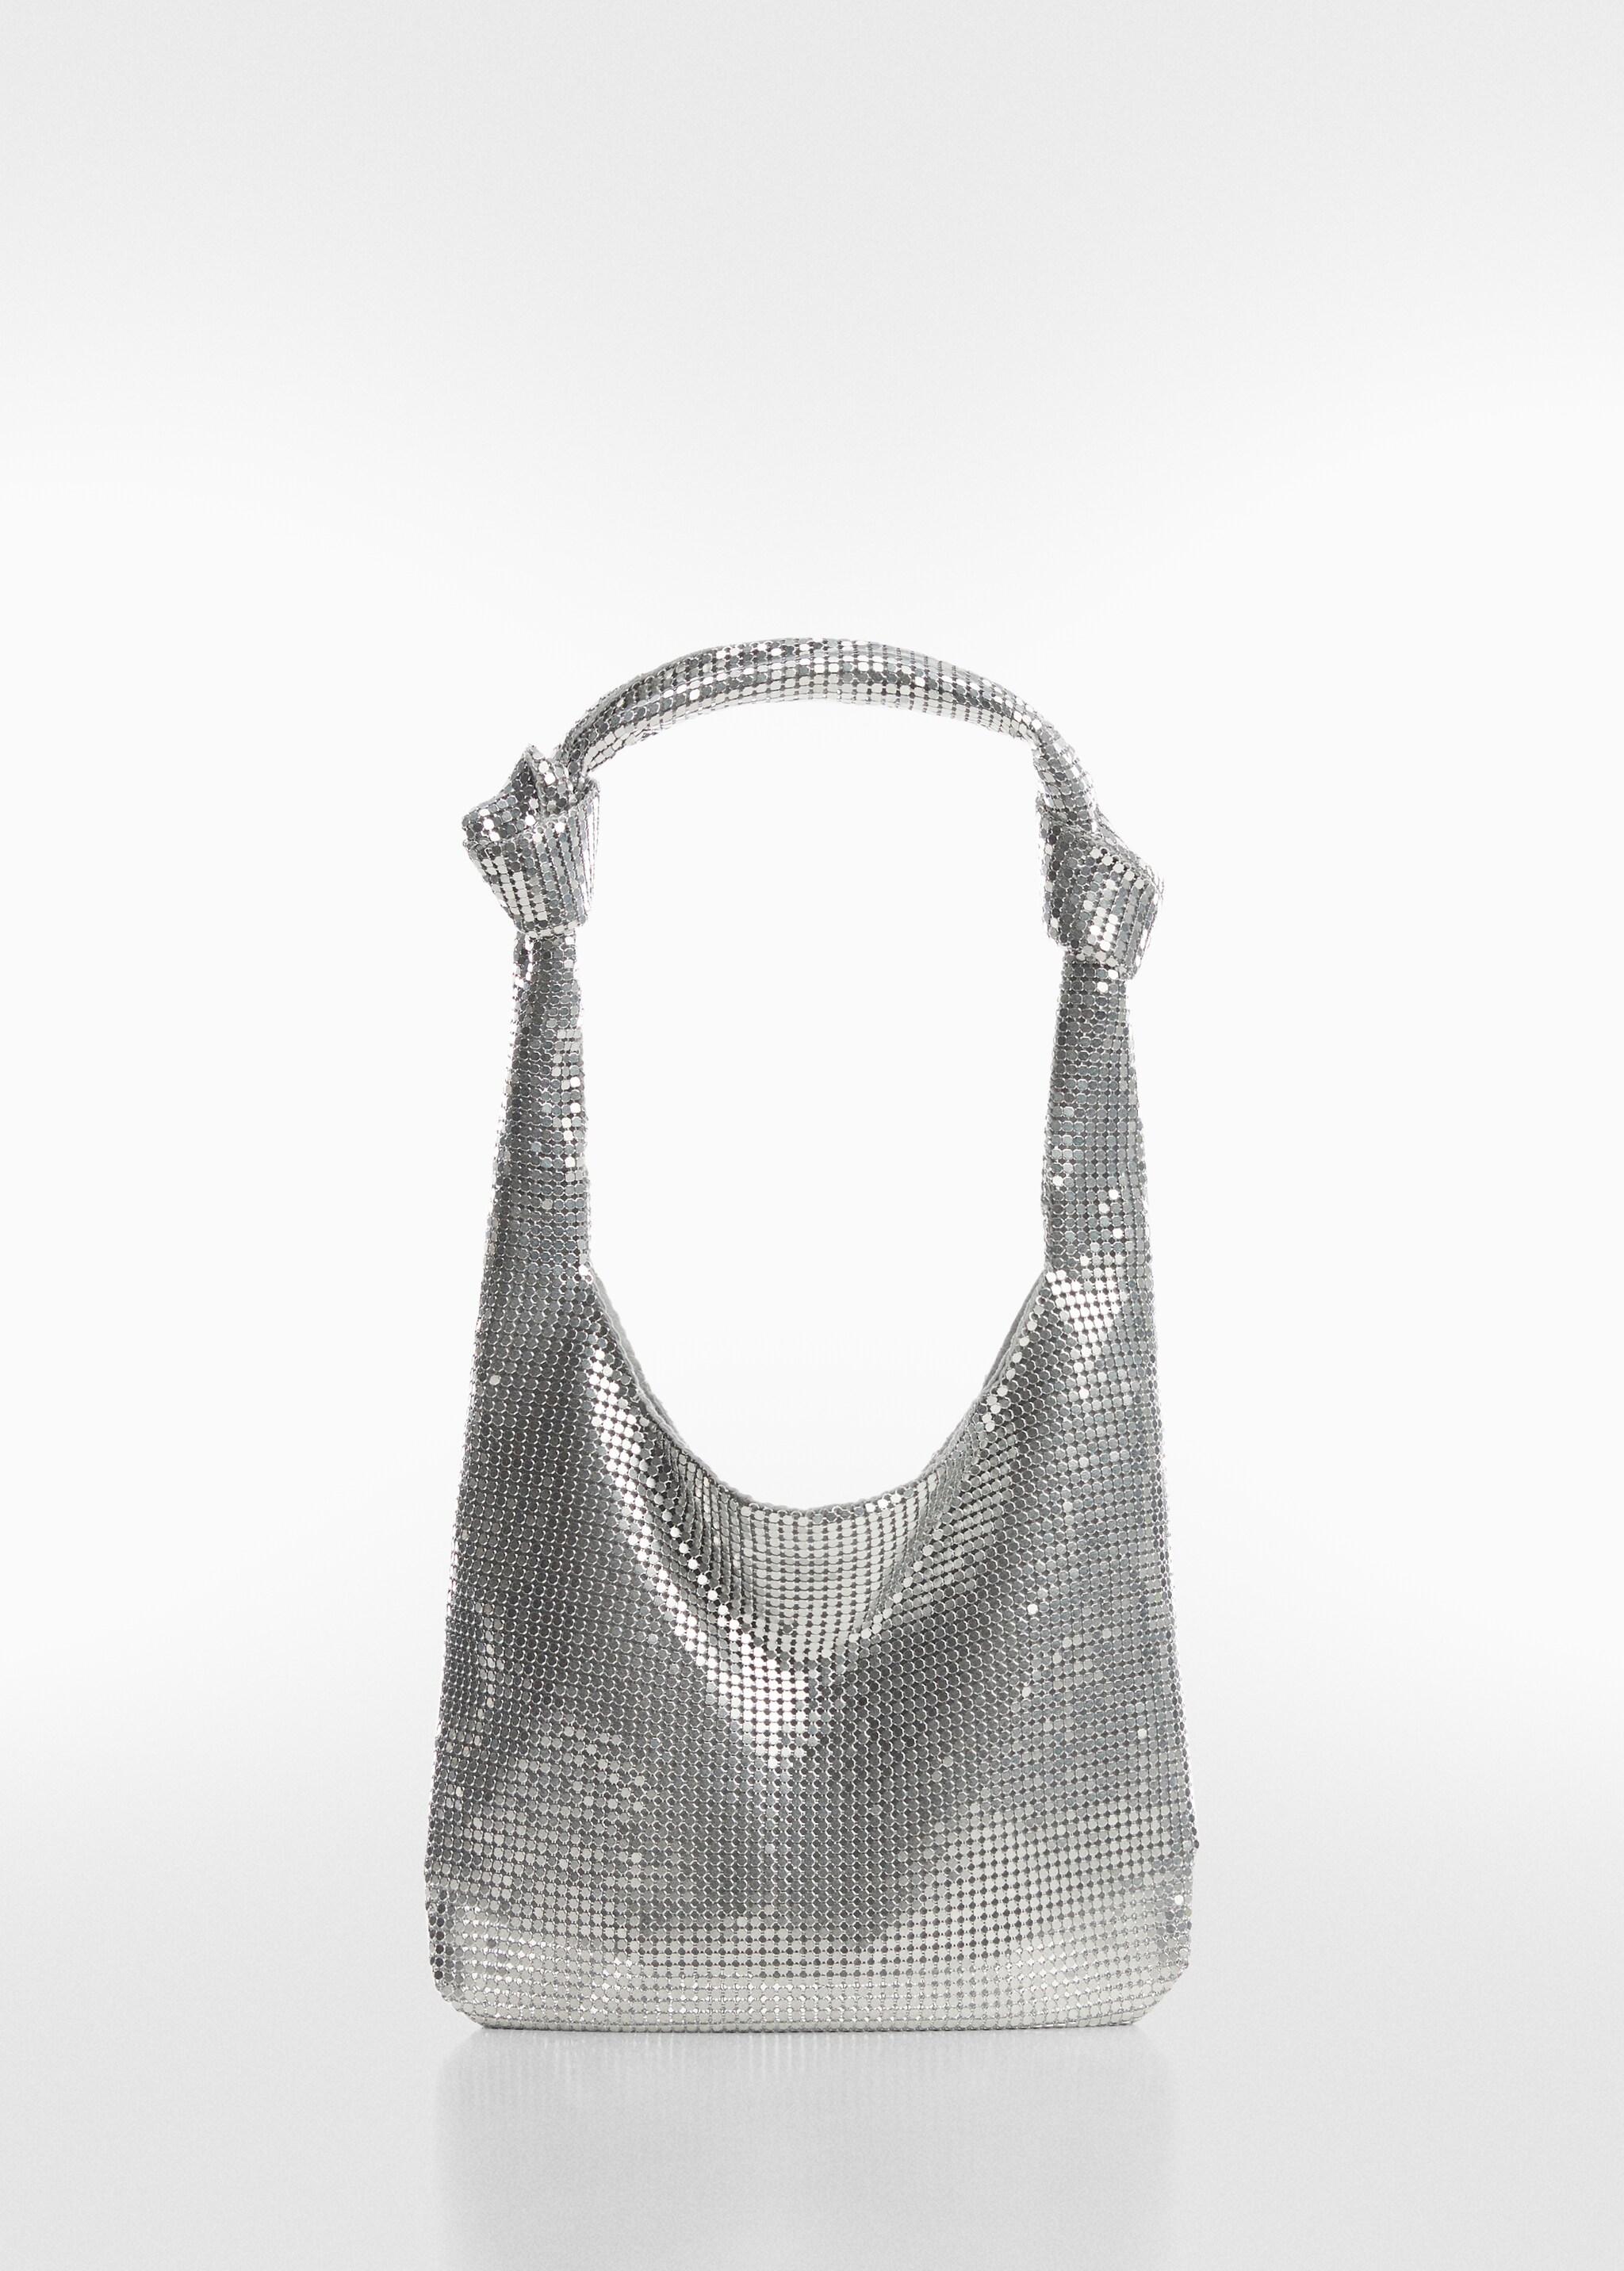 Crystal shoulder bag - Article without model